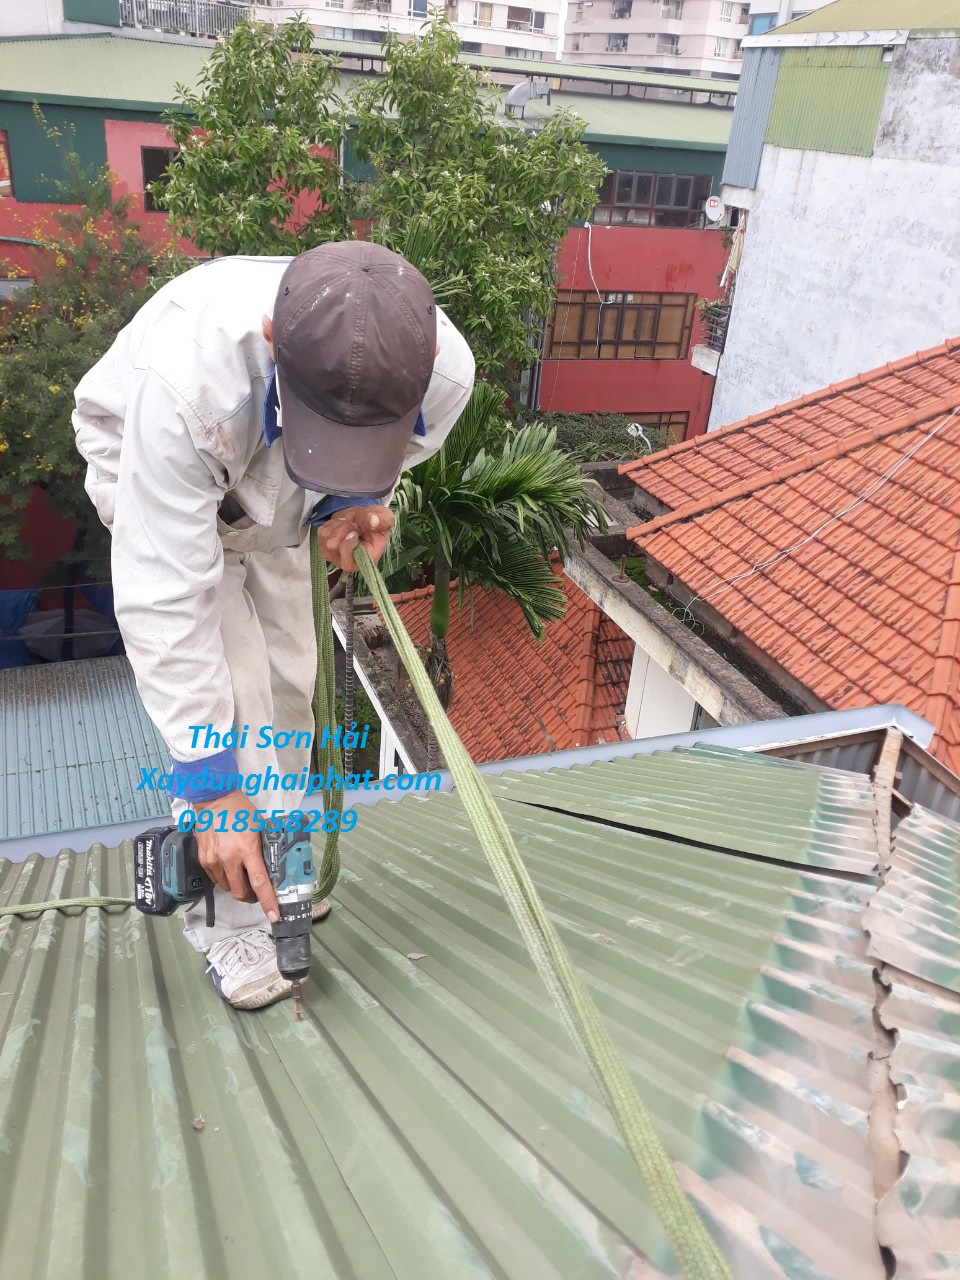 Làm mái tôn nhà dân dụng, thay thế mái tôn nhà cũ ở Hà Nội giá rẻ